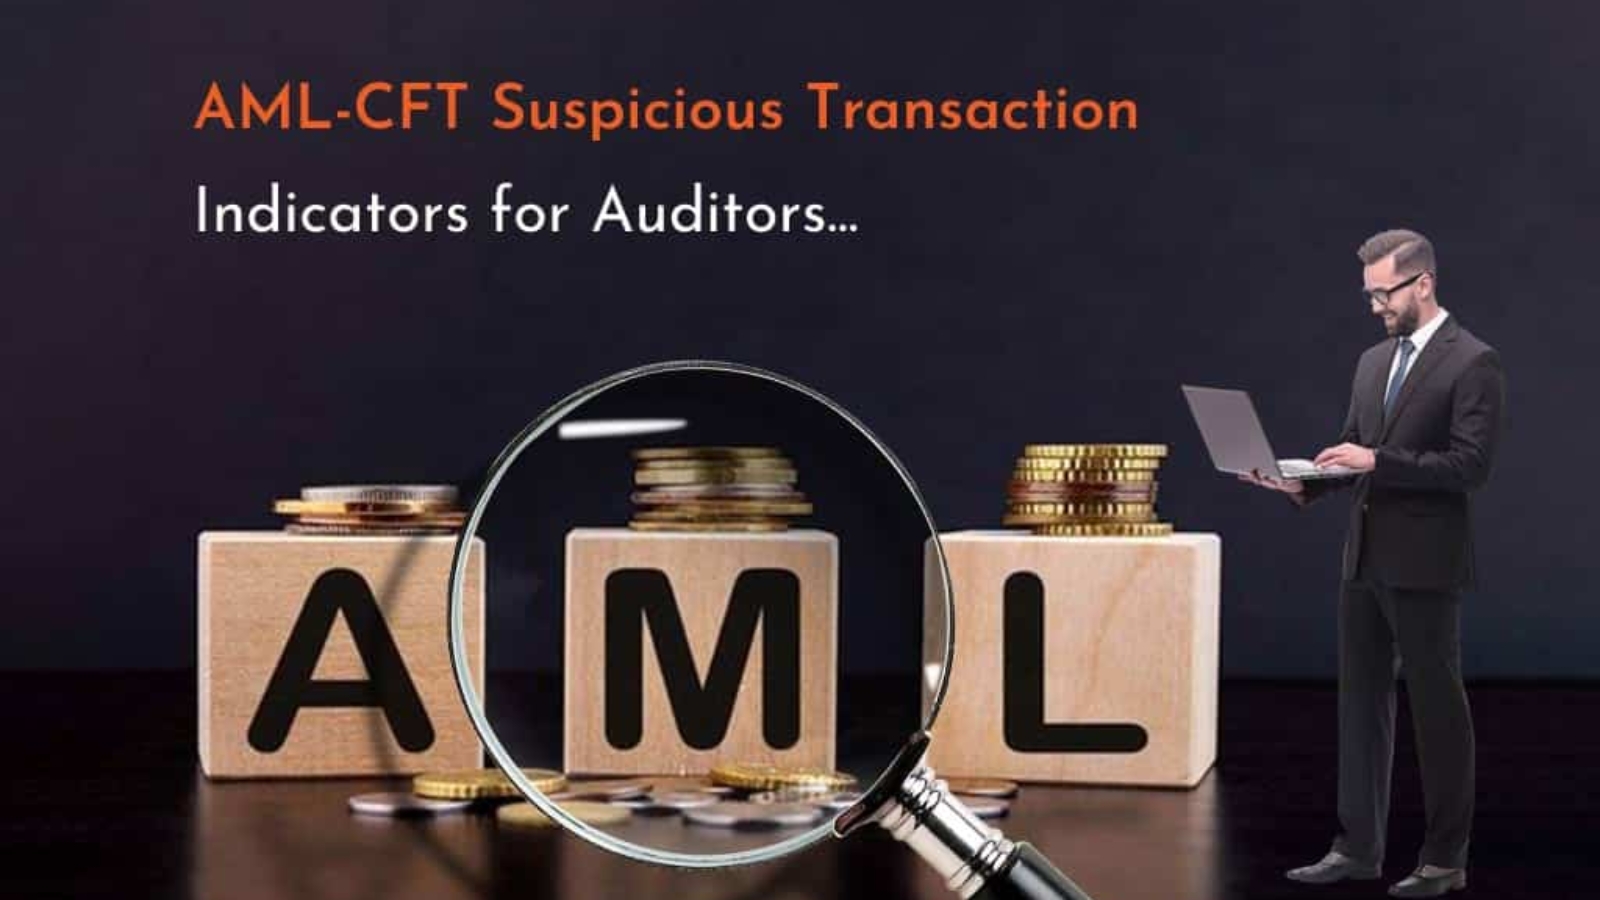 AML-CFT Suspicious Transaction Indicators for Auditors